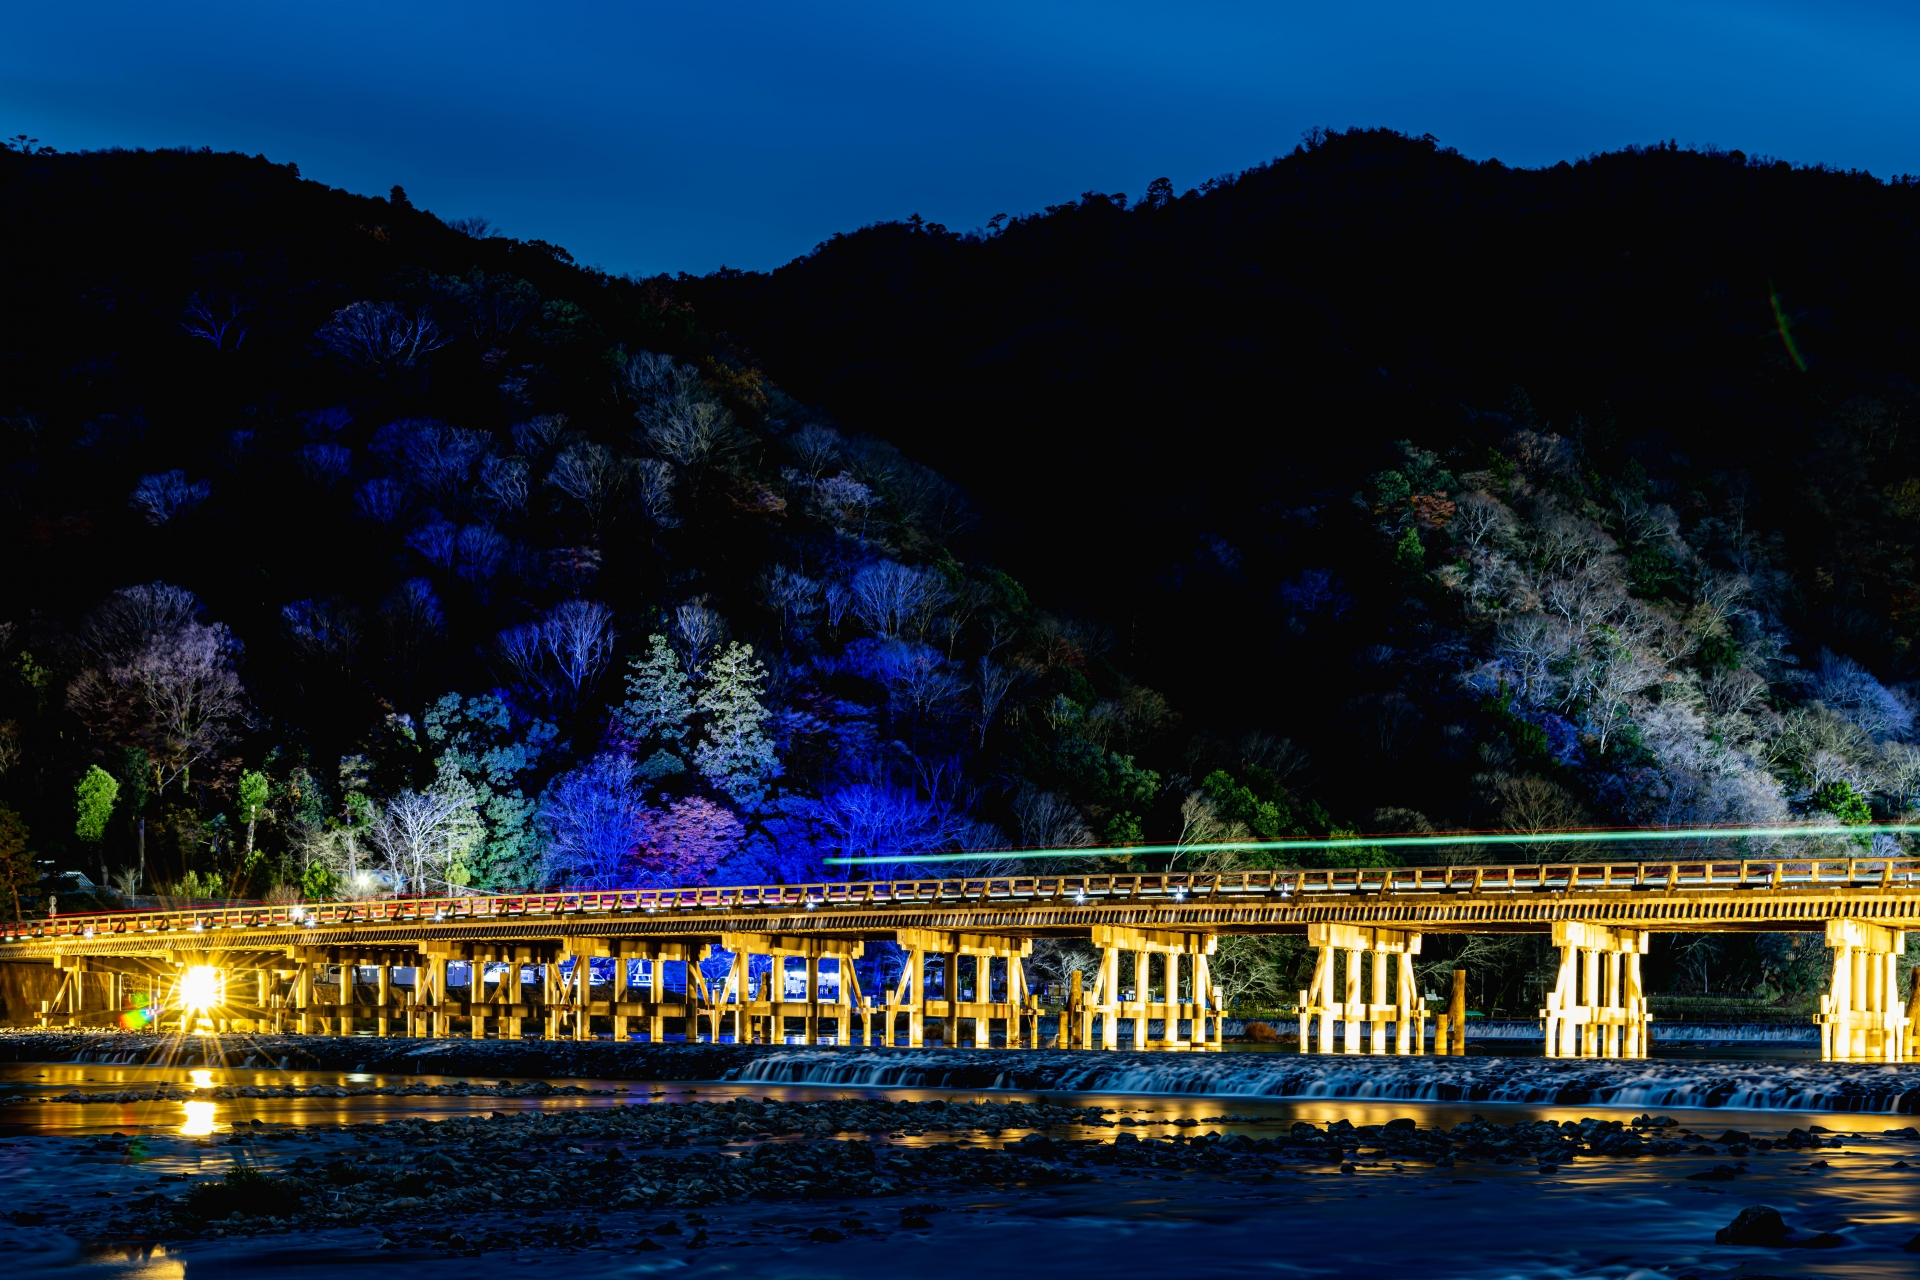 京都 嵐山の名所 渡月橋の魅力を紹介 写真を撮るなら Seeingjapan